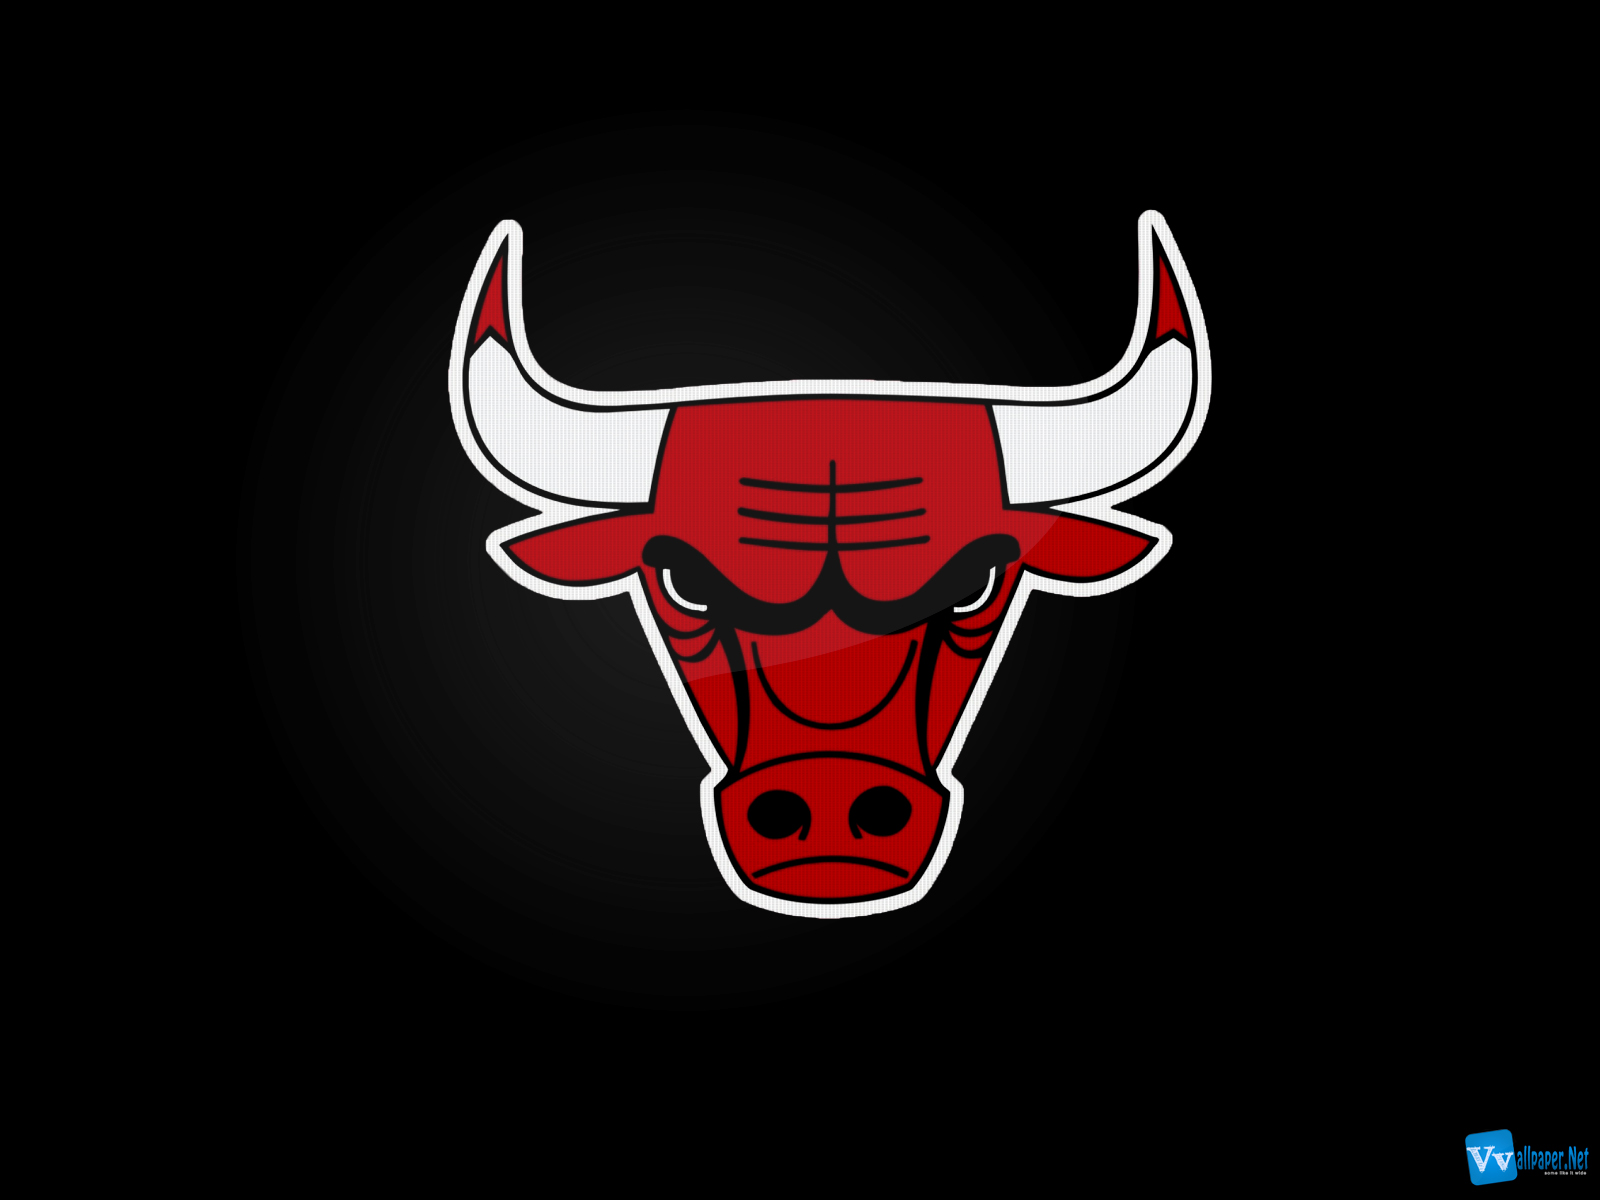 NbateamslogoNba Chicago Bulls Logo Dark HD Wallpaper VvallpaperNet